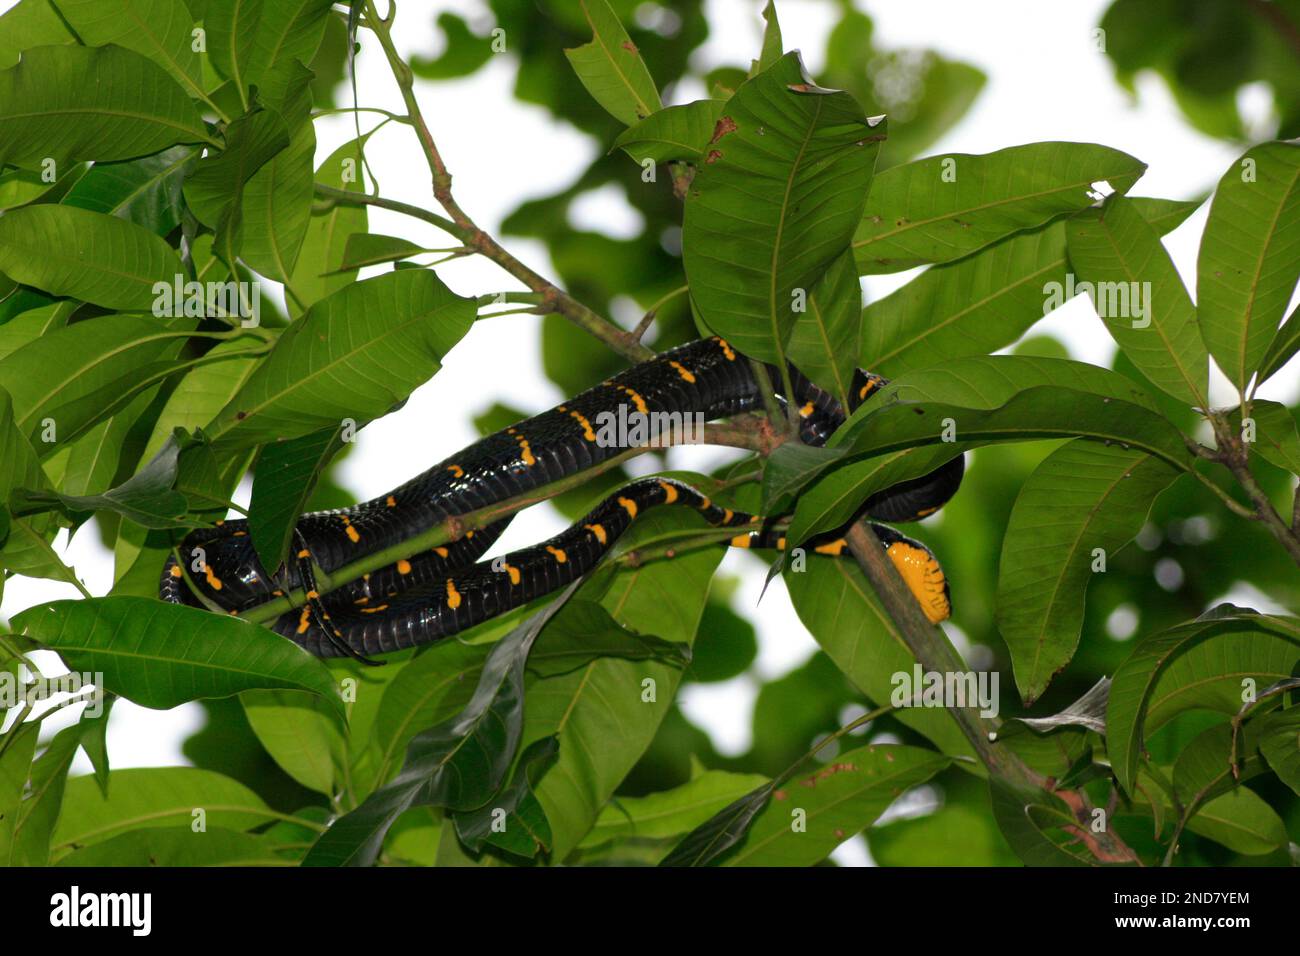 La boïga dendrophila (également connue sous le nom de serpent de mangrove ou serpent de chat à anneaux dorés) est une espèce de serpents de la famille des Colubridae considérés comme légèrement venimeux. Banque D'Images